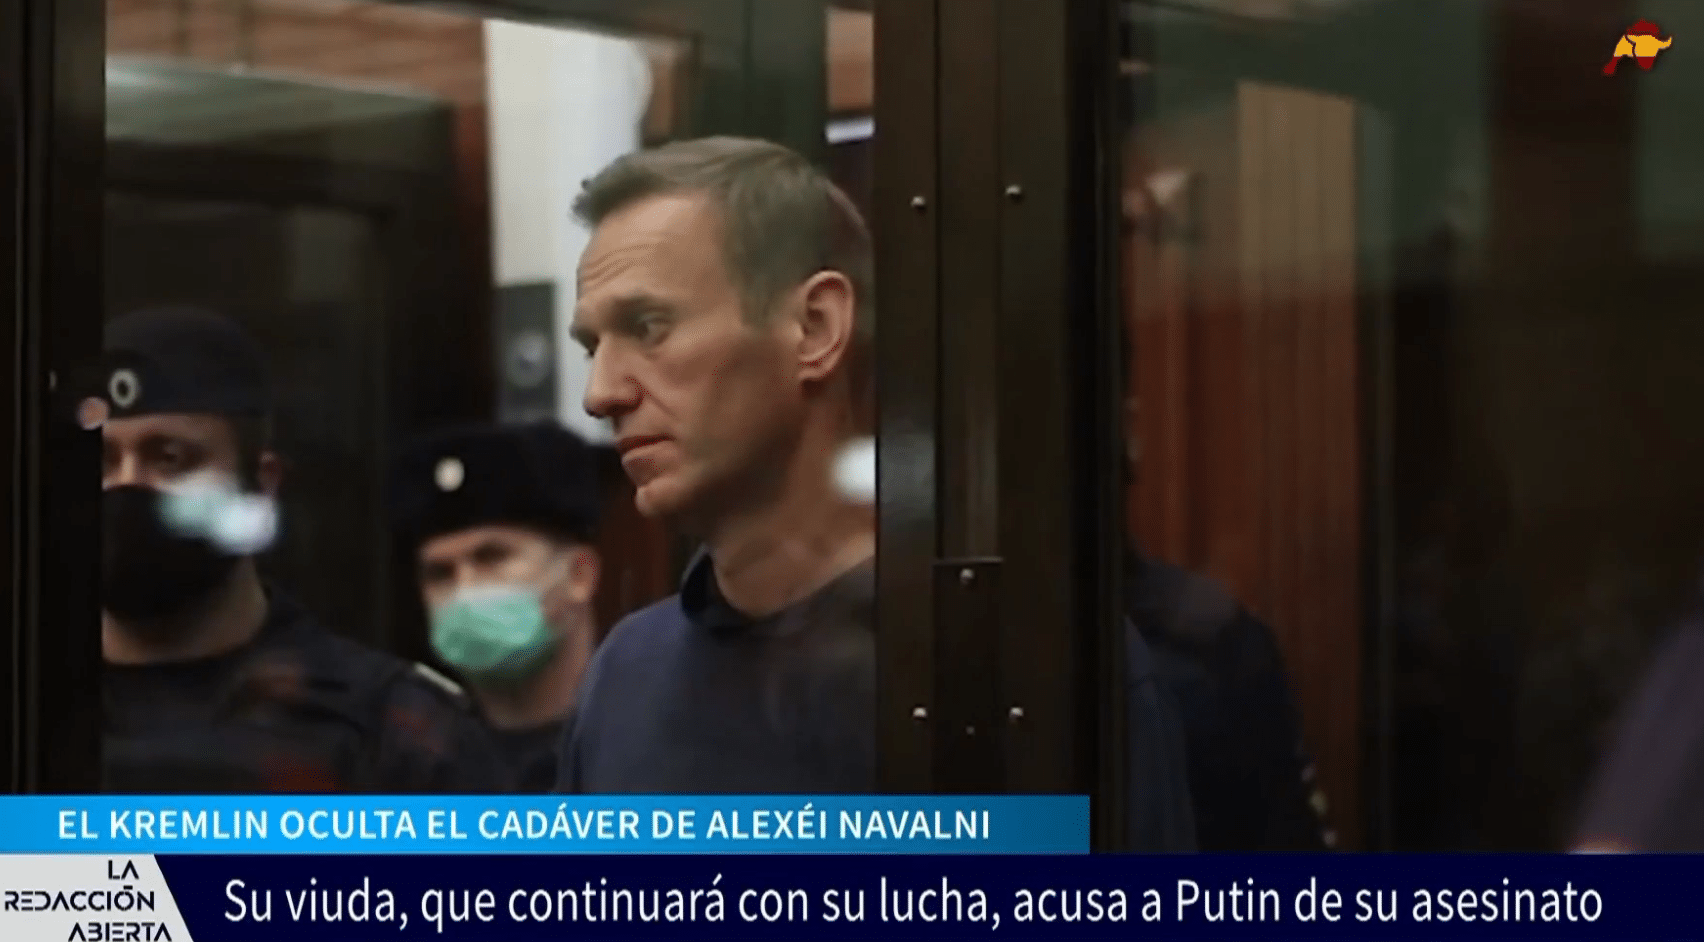 Putin sigue sin entregar el cuerpo de Navalni a su familia y se especula con que podría presentar hematomas por convulsiones